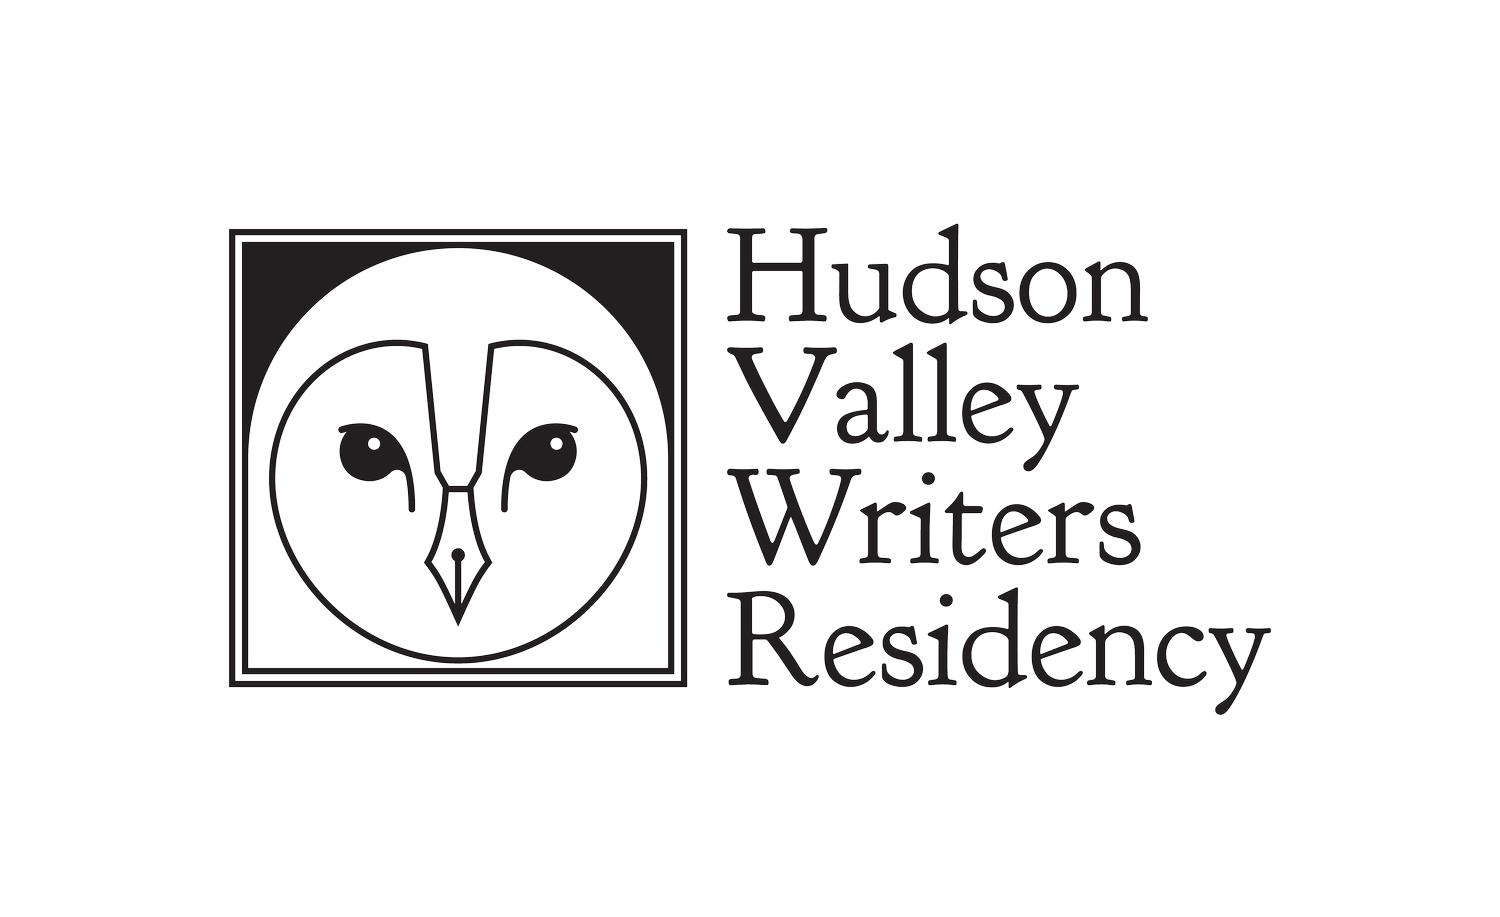 Hudson Valley Writers Residency